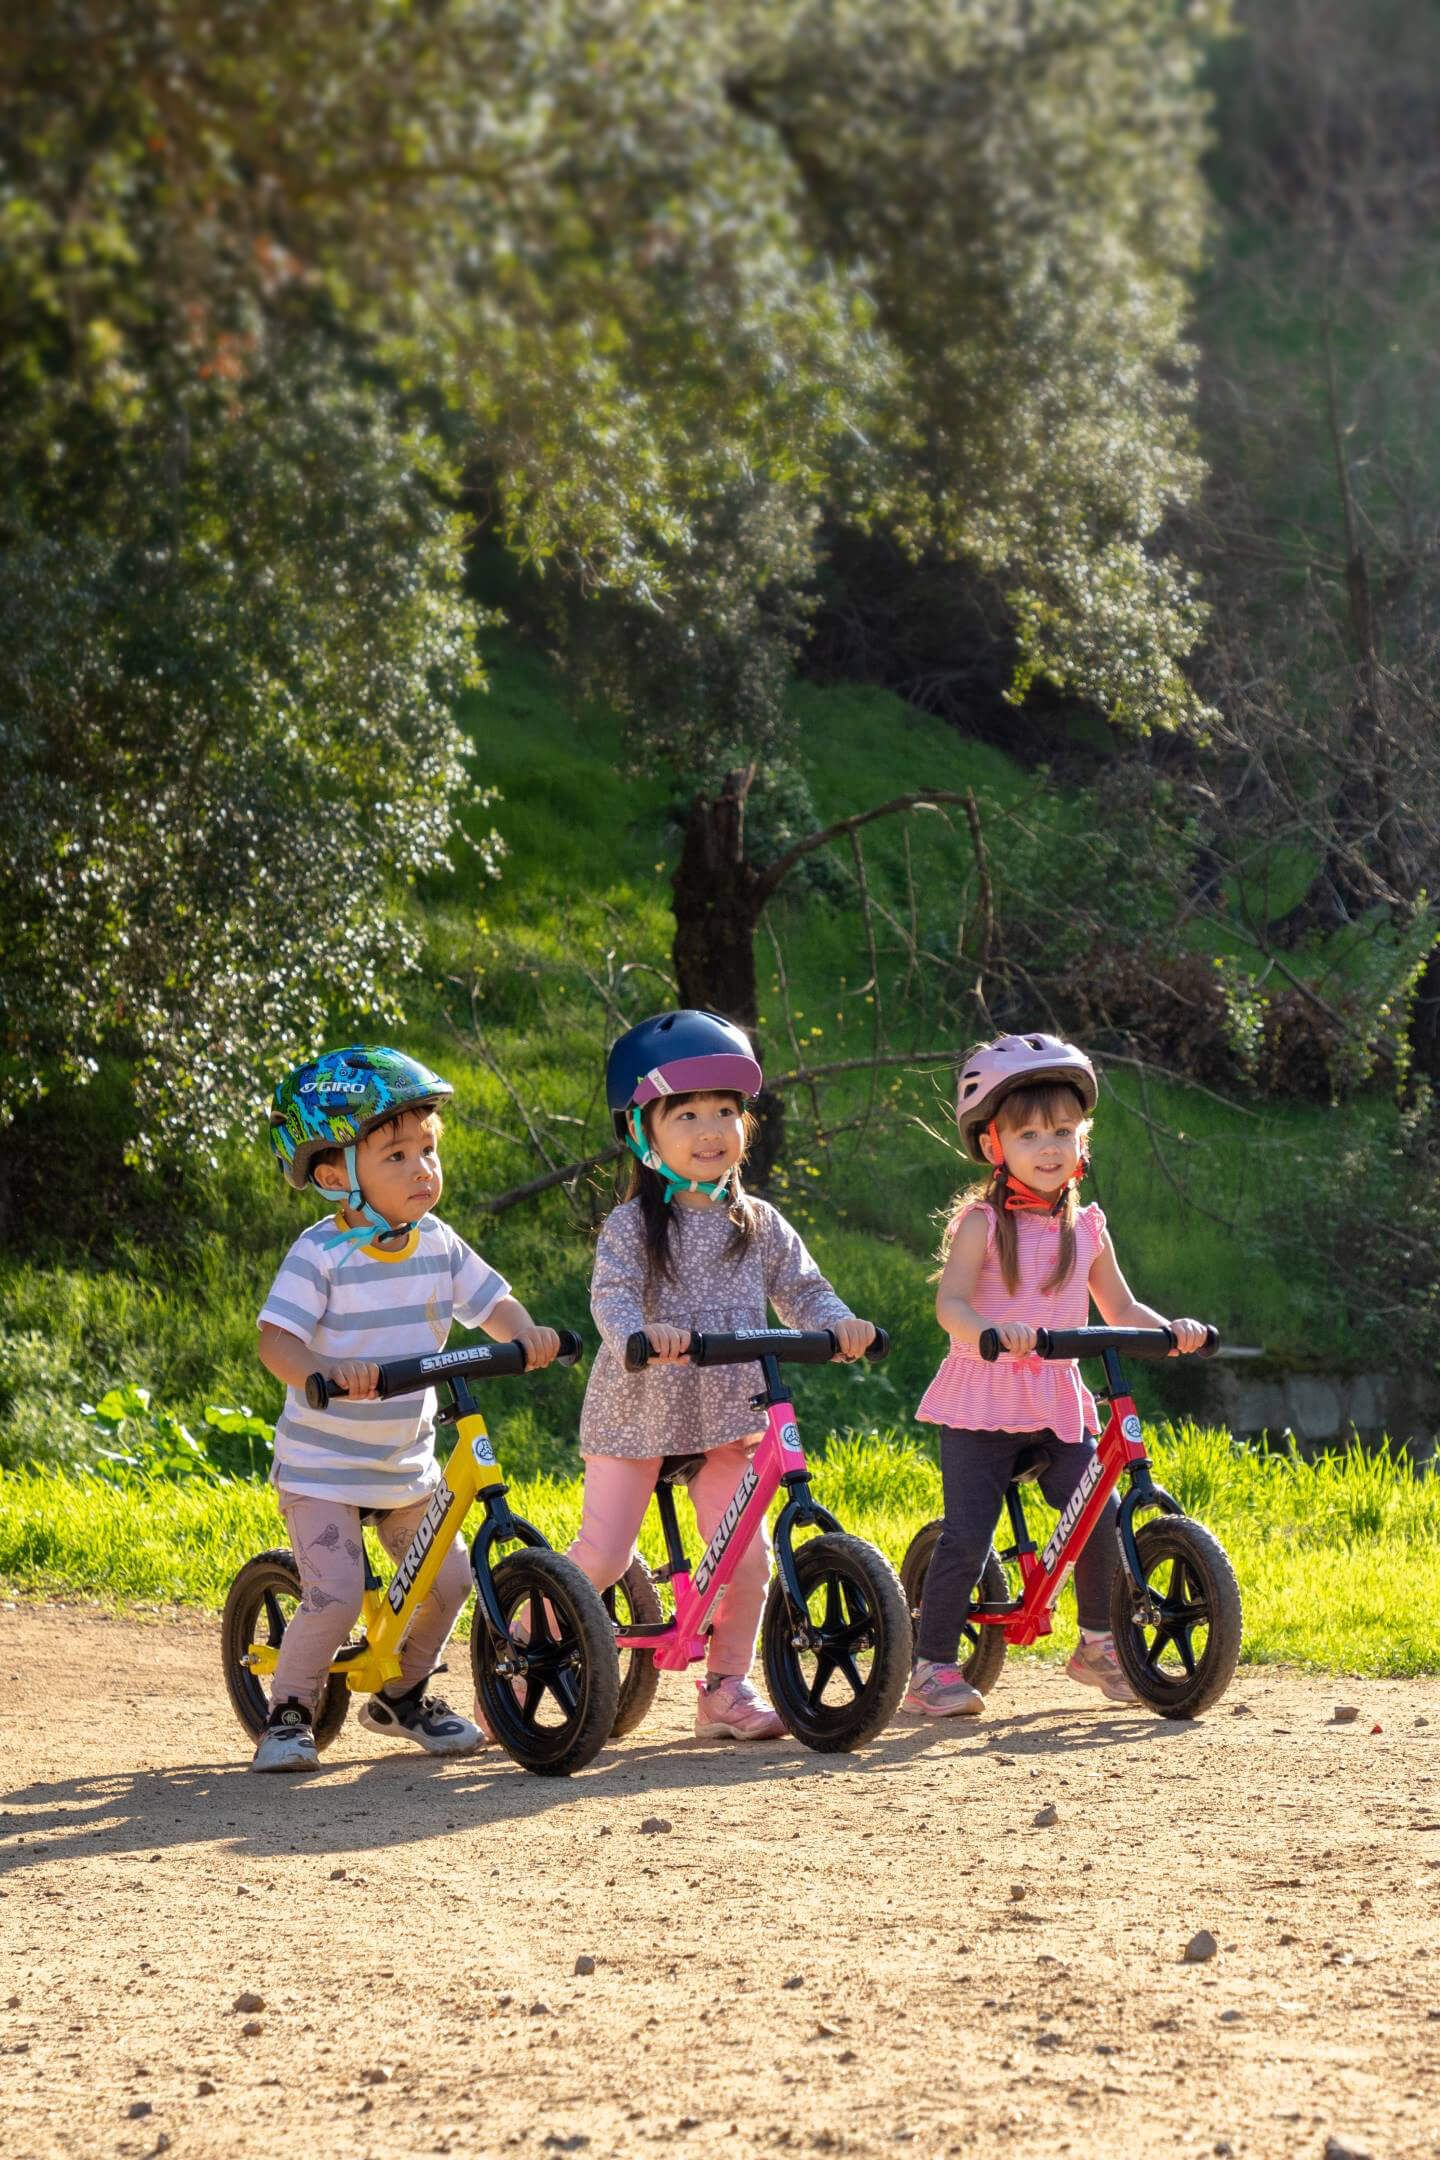 Three children on 12 inch Strider bikes ride on a dirt nature trail